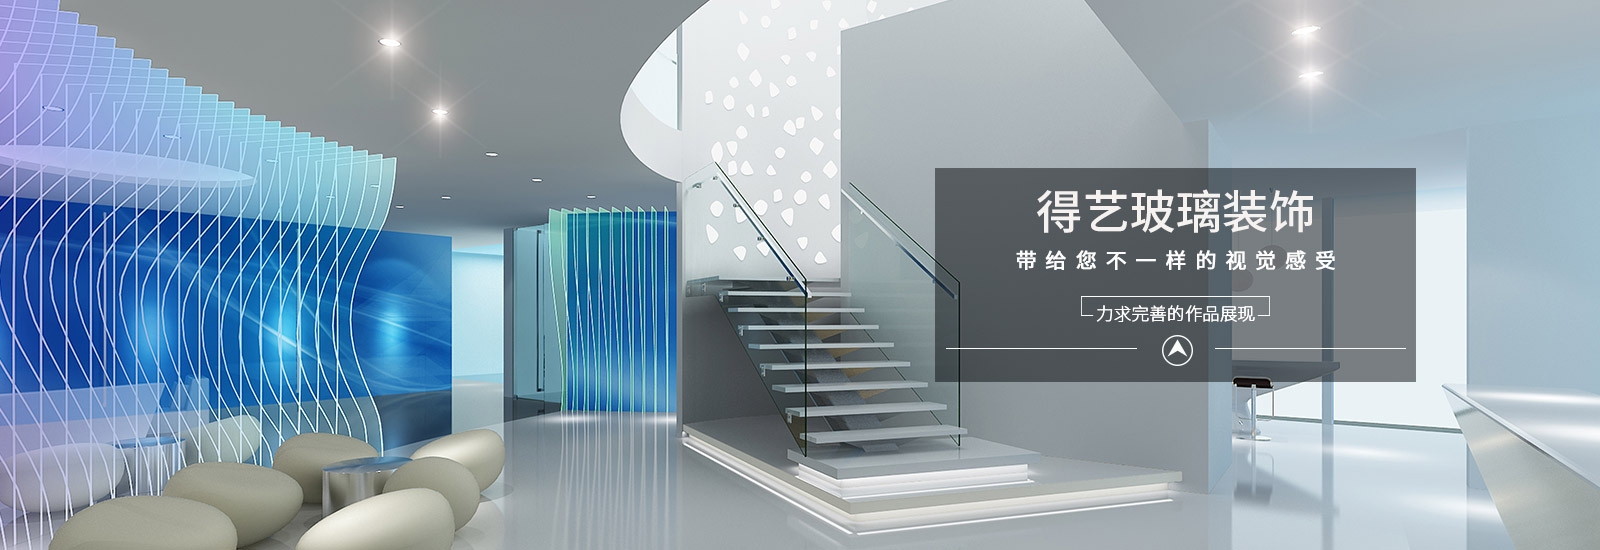 上海藝術玻璃設計